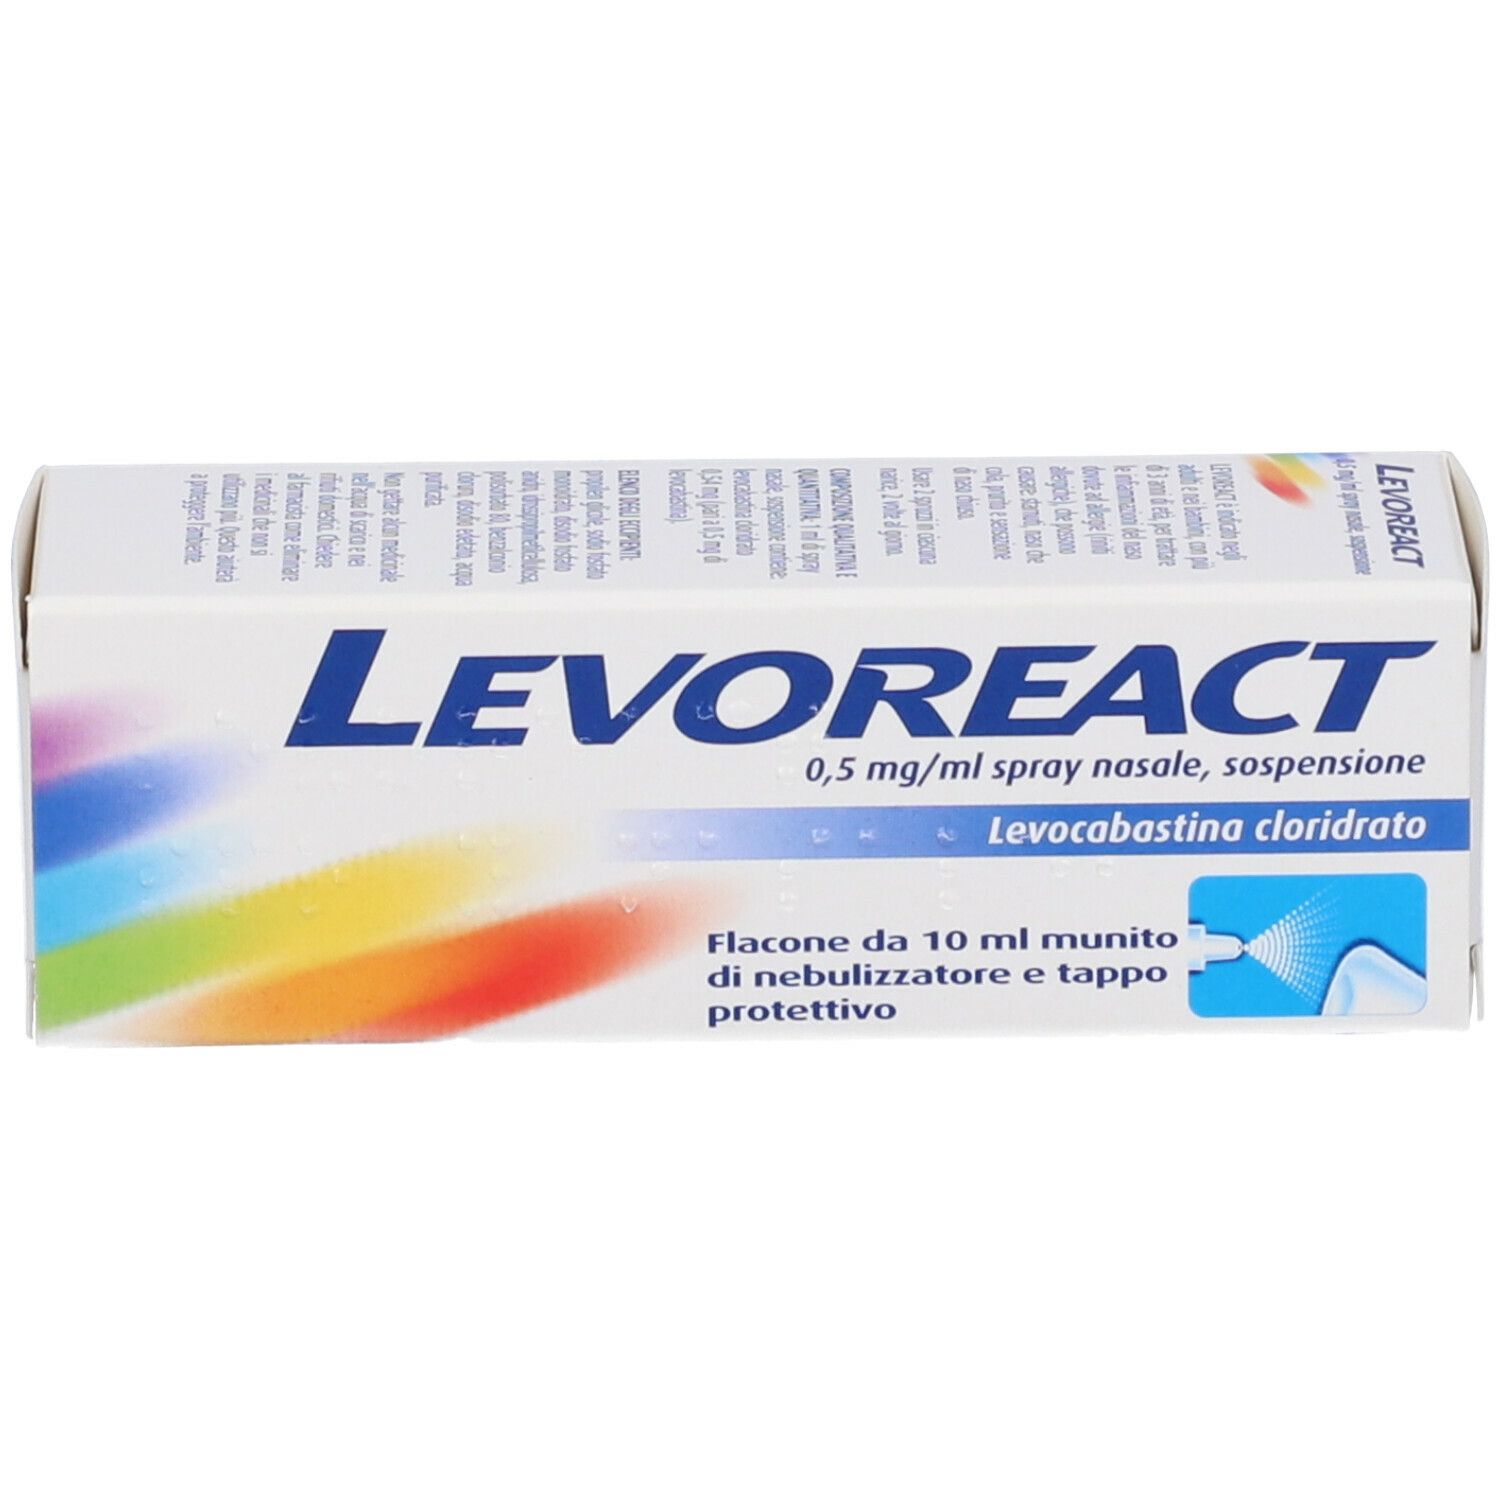 LEVOREACT Spray nasale